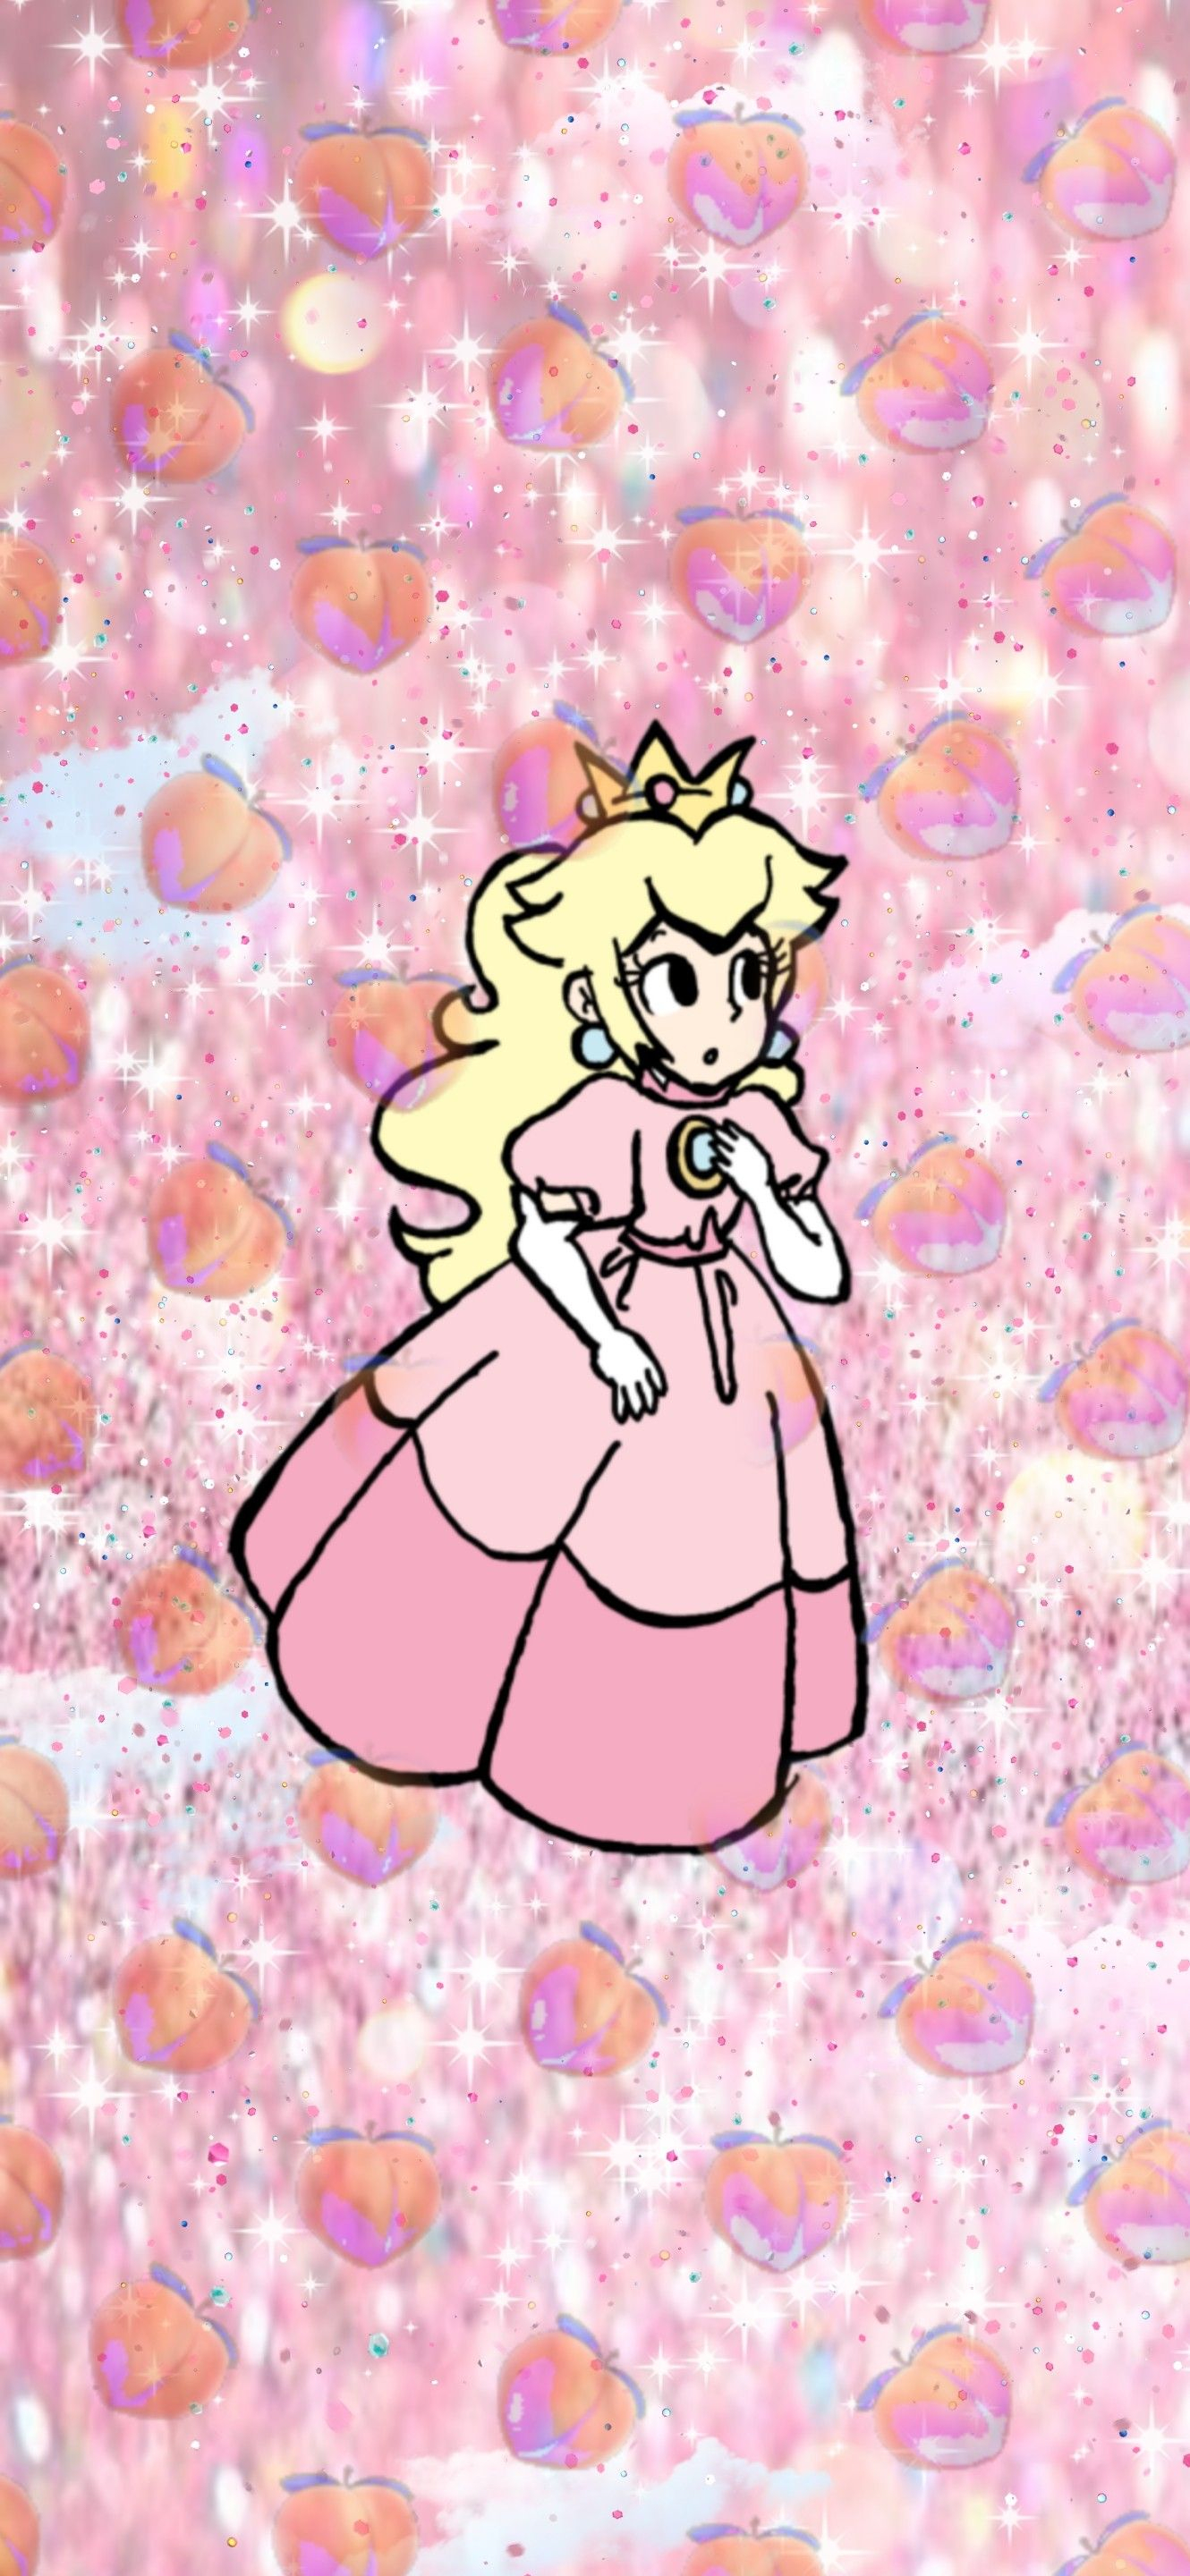 1330x2880 Nintendo Princess Peach pink aesthetic phone wallpaper | Peach wallpaper, Super princess peach, Nintendo princess